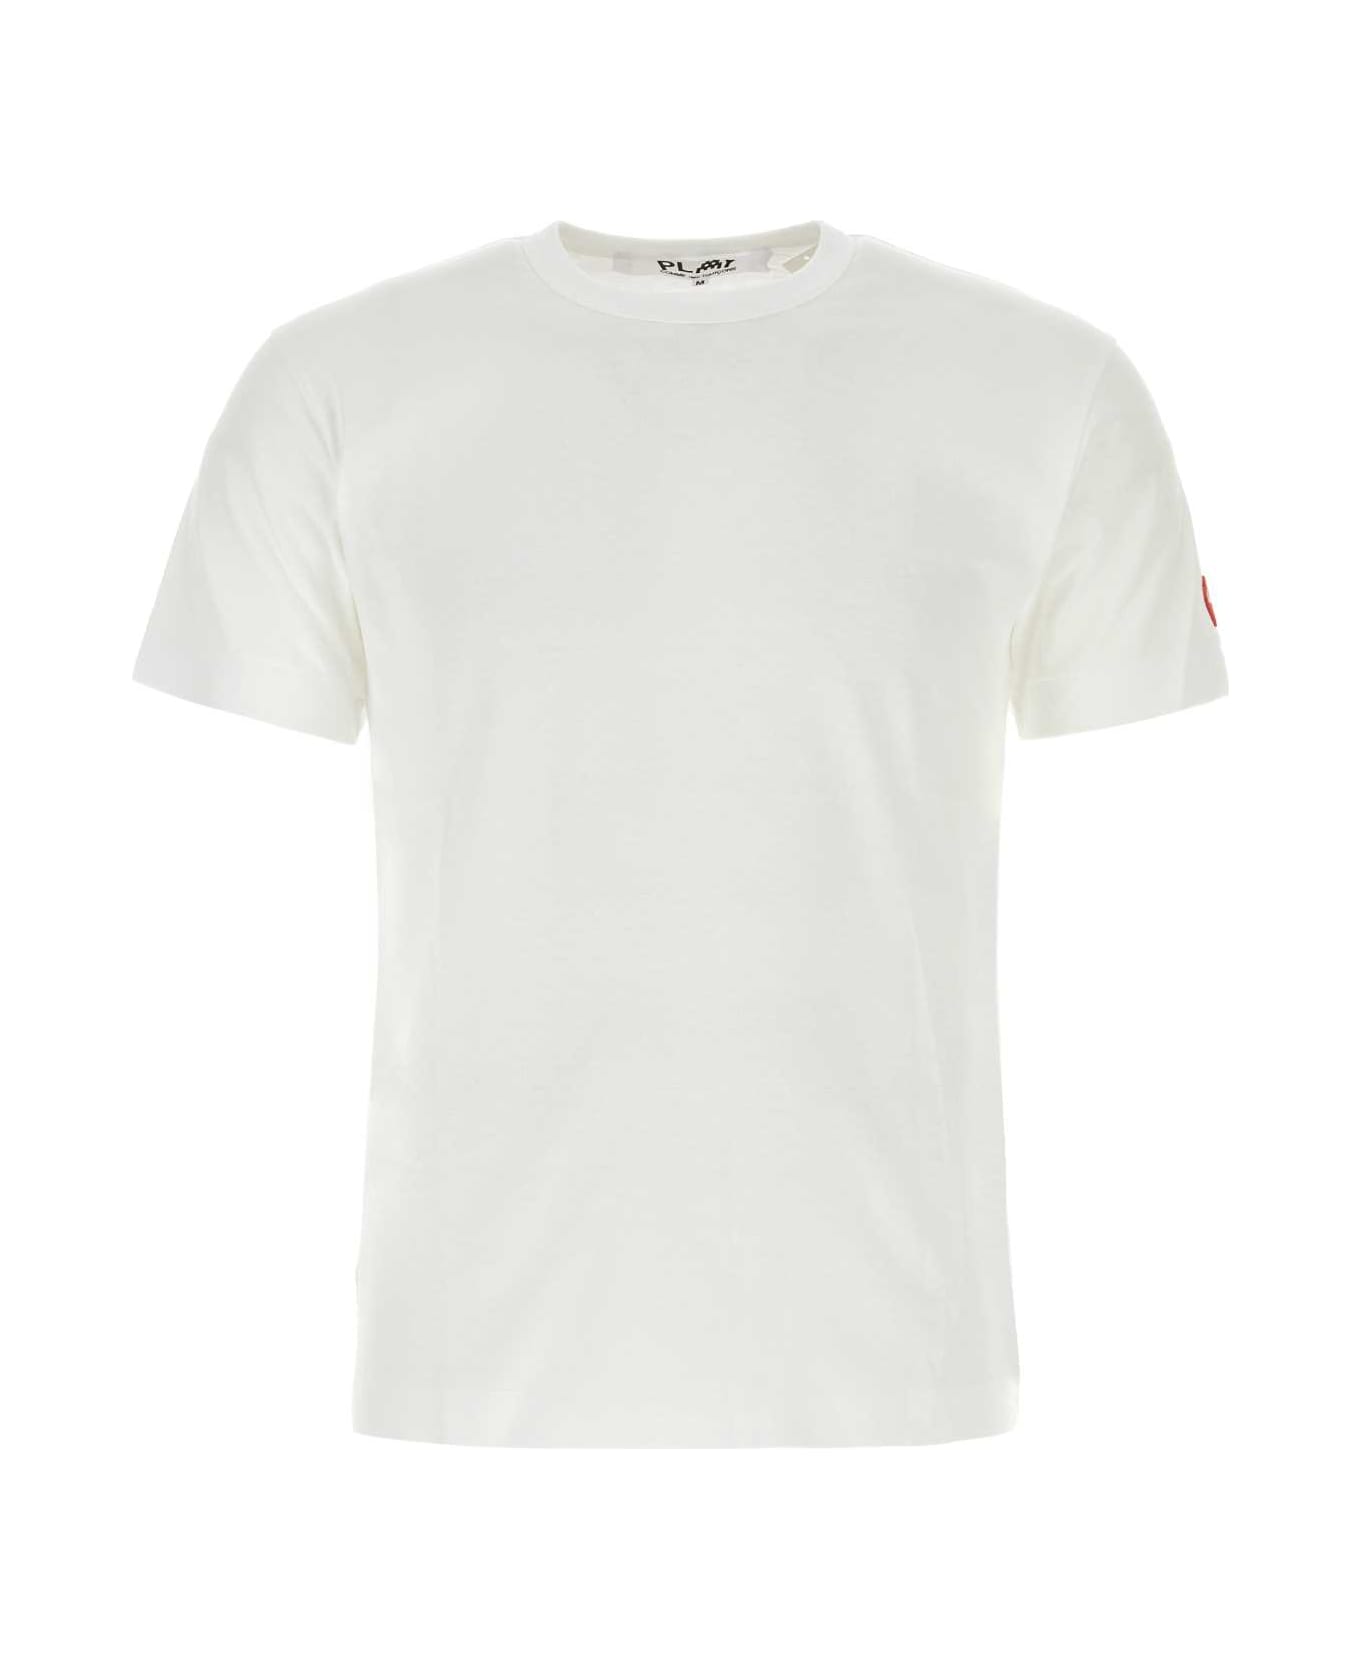 Comme des Garçons Play White Cotton T-shirt - WHT シャツ